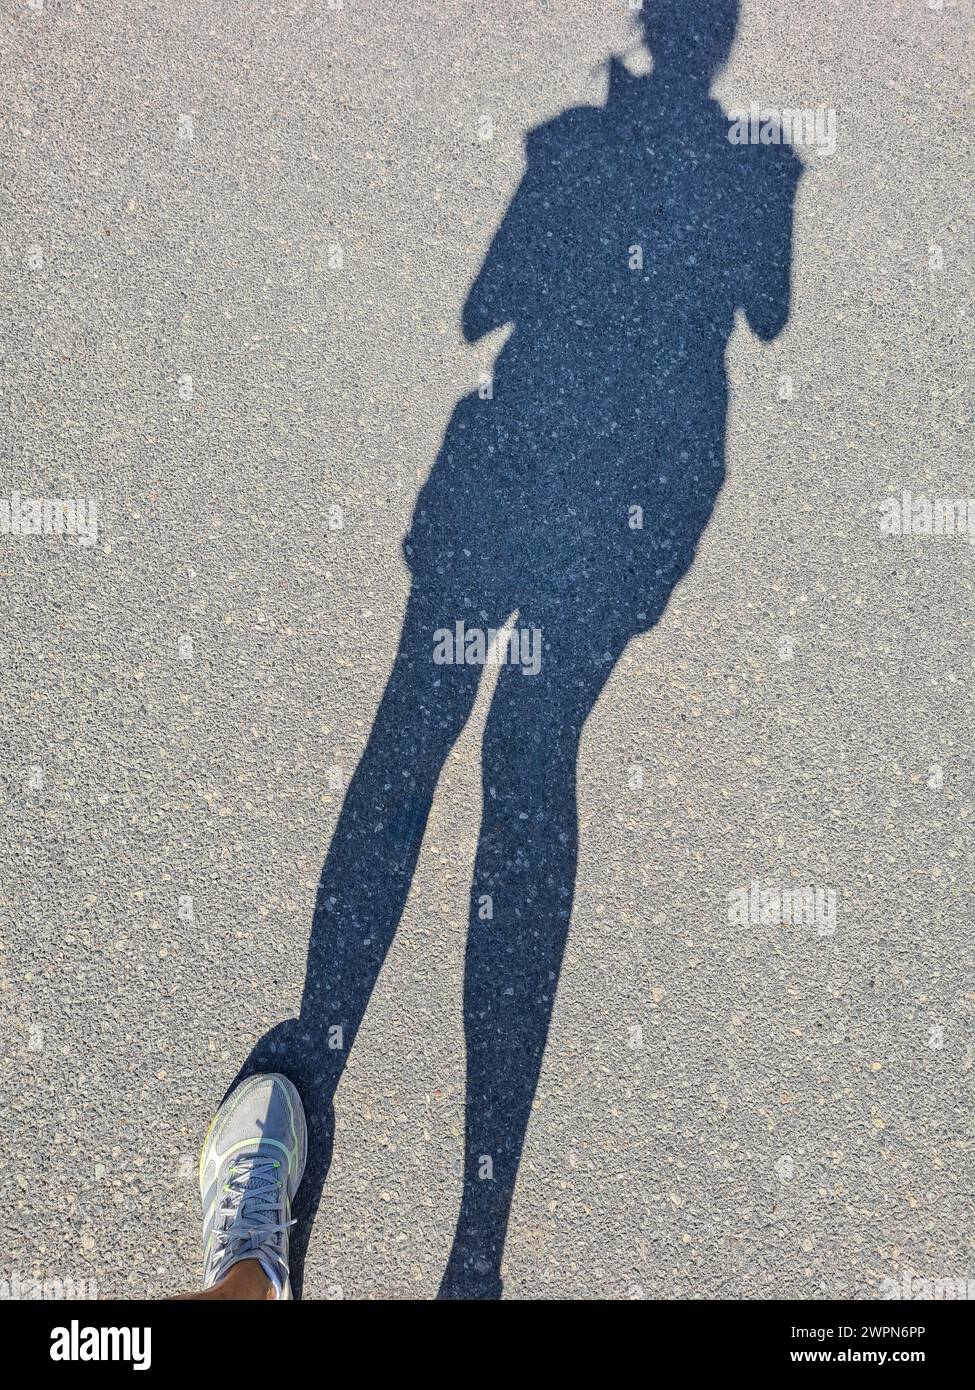 Seule l'ombre d'une femme et sa chaussure de sport blanche gauche peuvent être vues sur la surface de la route Banque D'Images